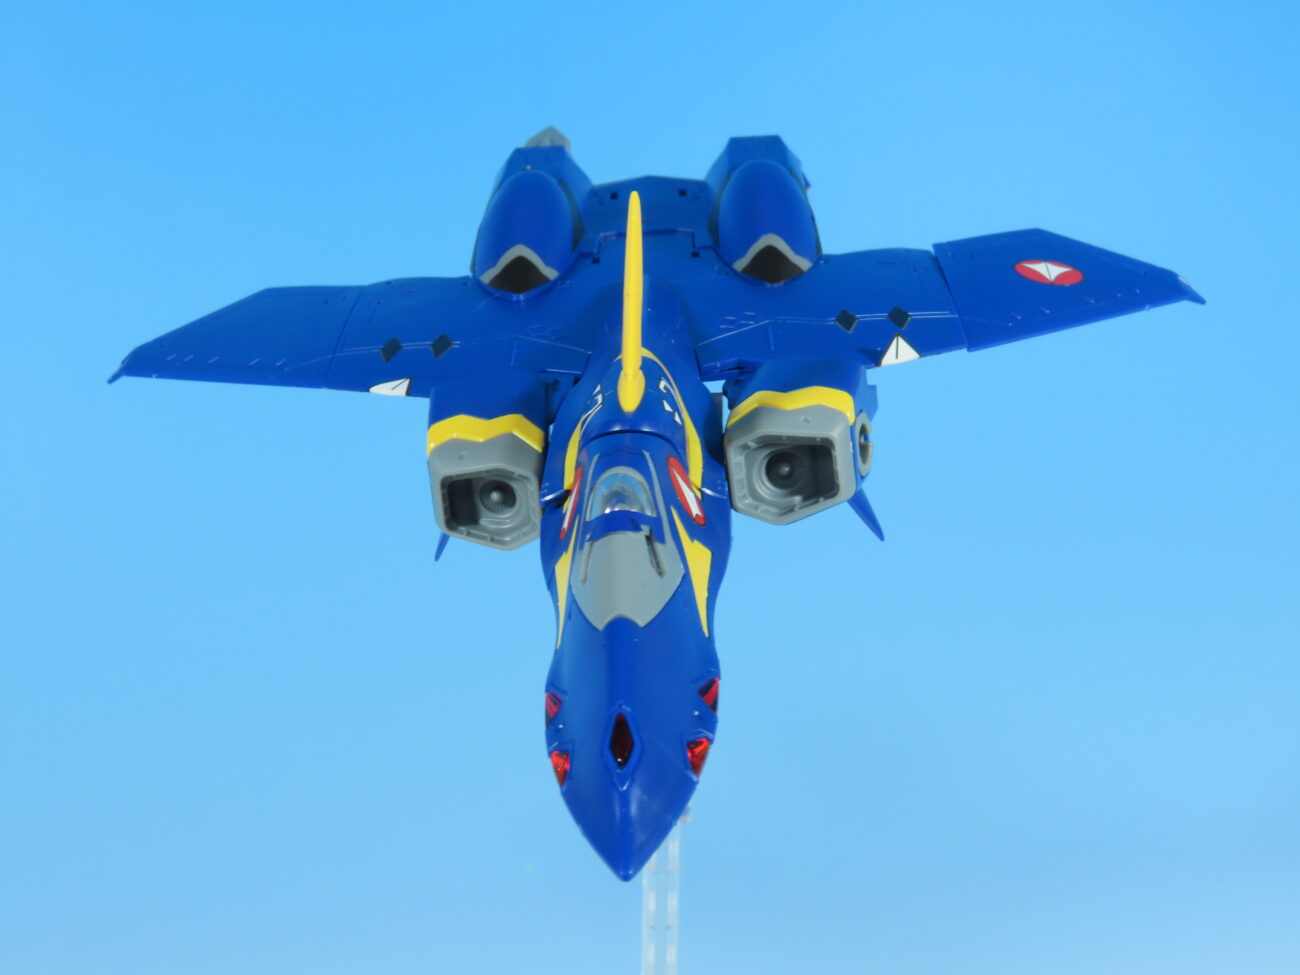 YF-21